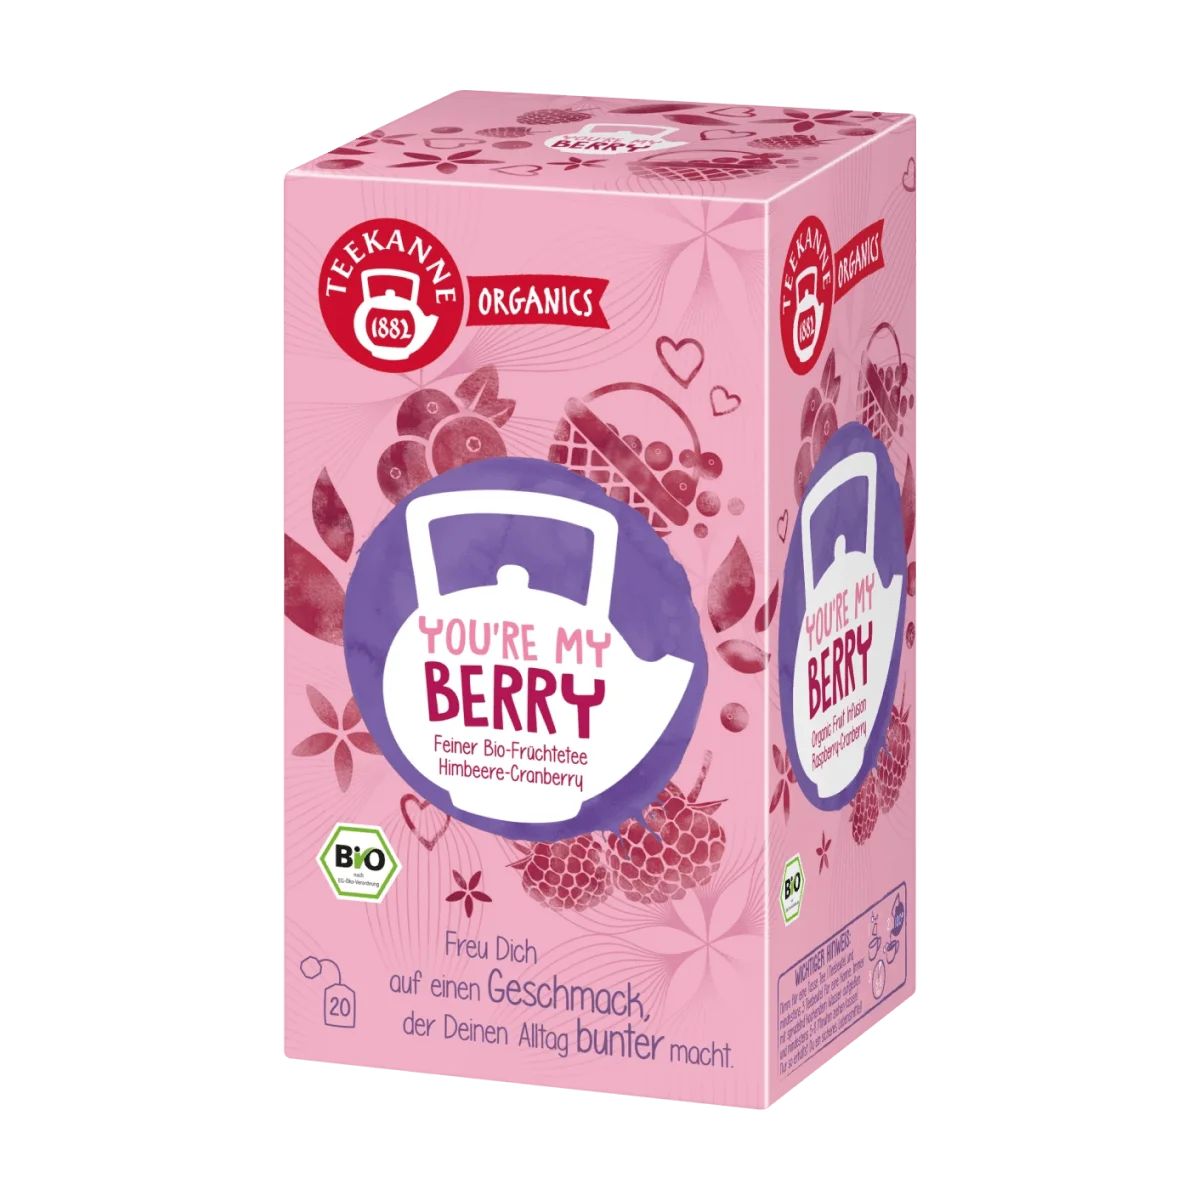 Teekanne Früchtetee you're my berry mit Himbeere, Cranberry (20 Beutel), 45 g